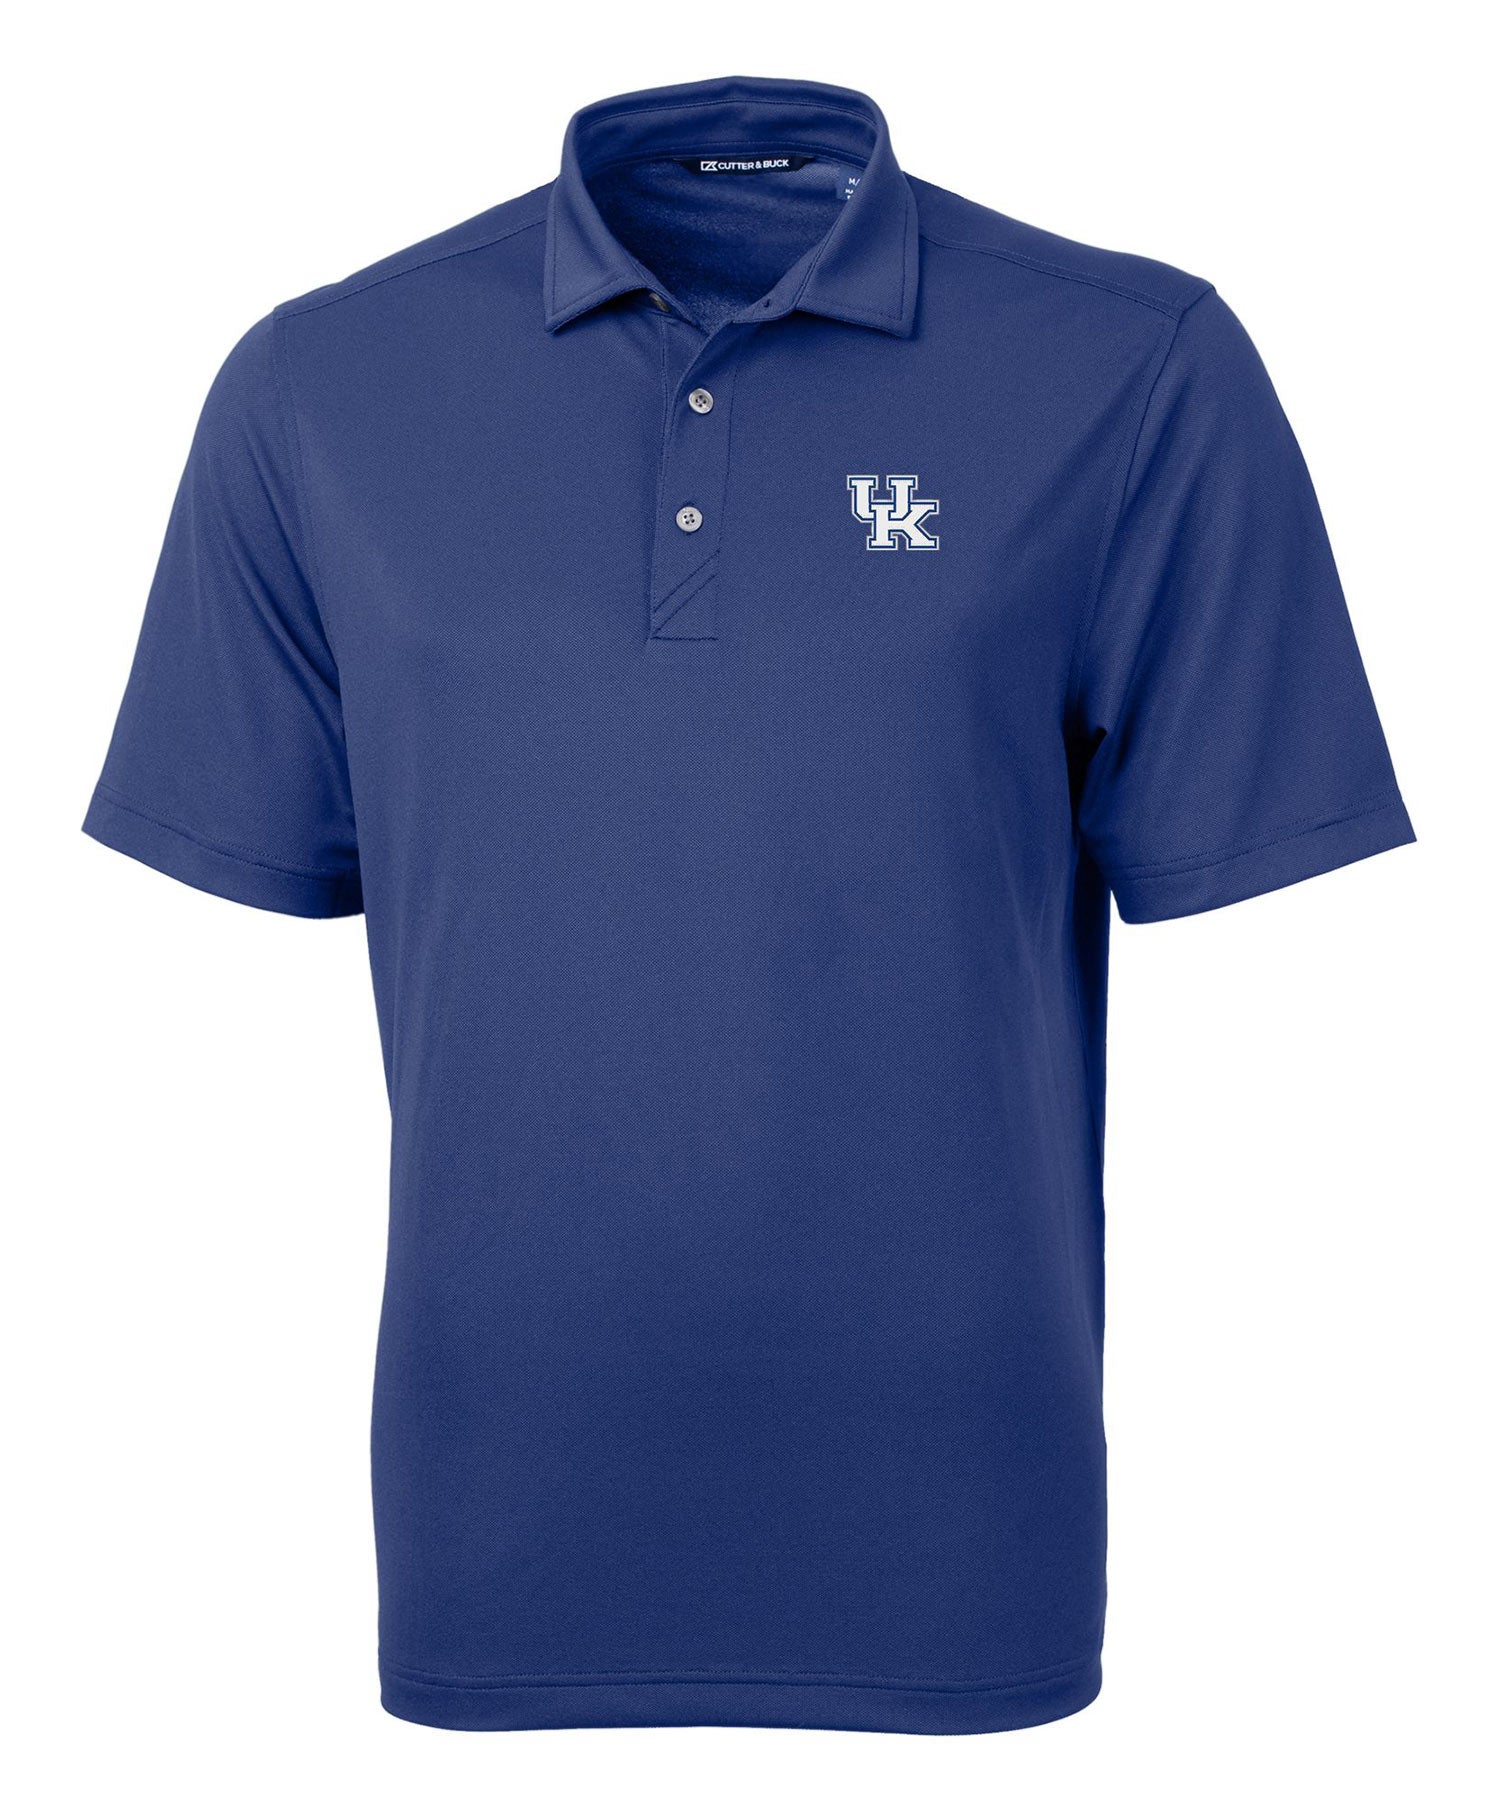 Cutter & Buck University of Kentucky Wildcats Short Sleeve Polo Knit Shirt, Men's Big & Tall